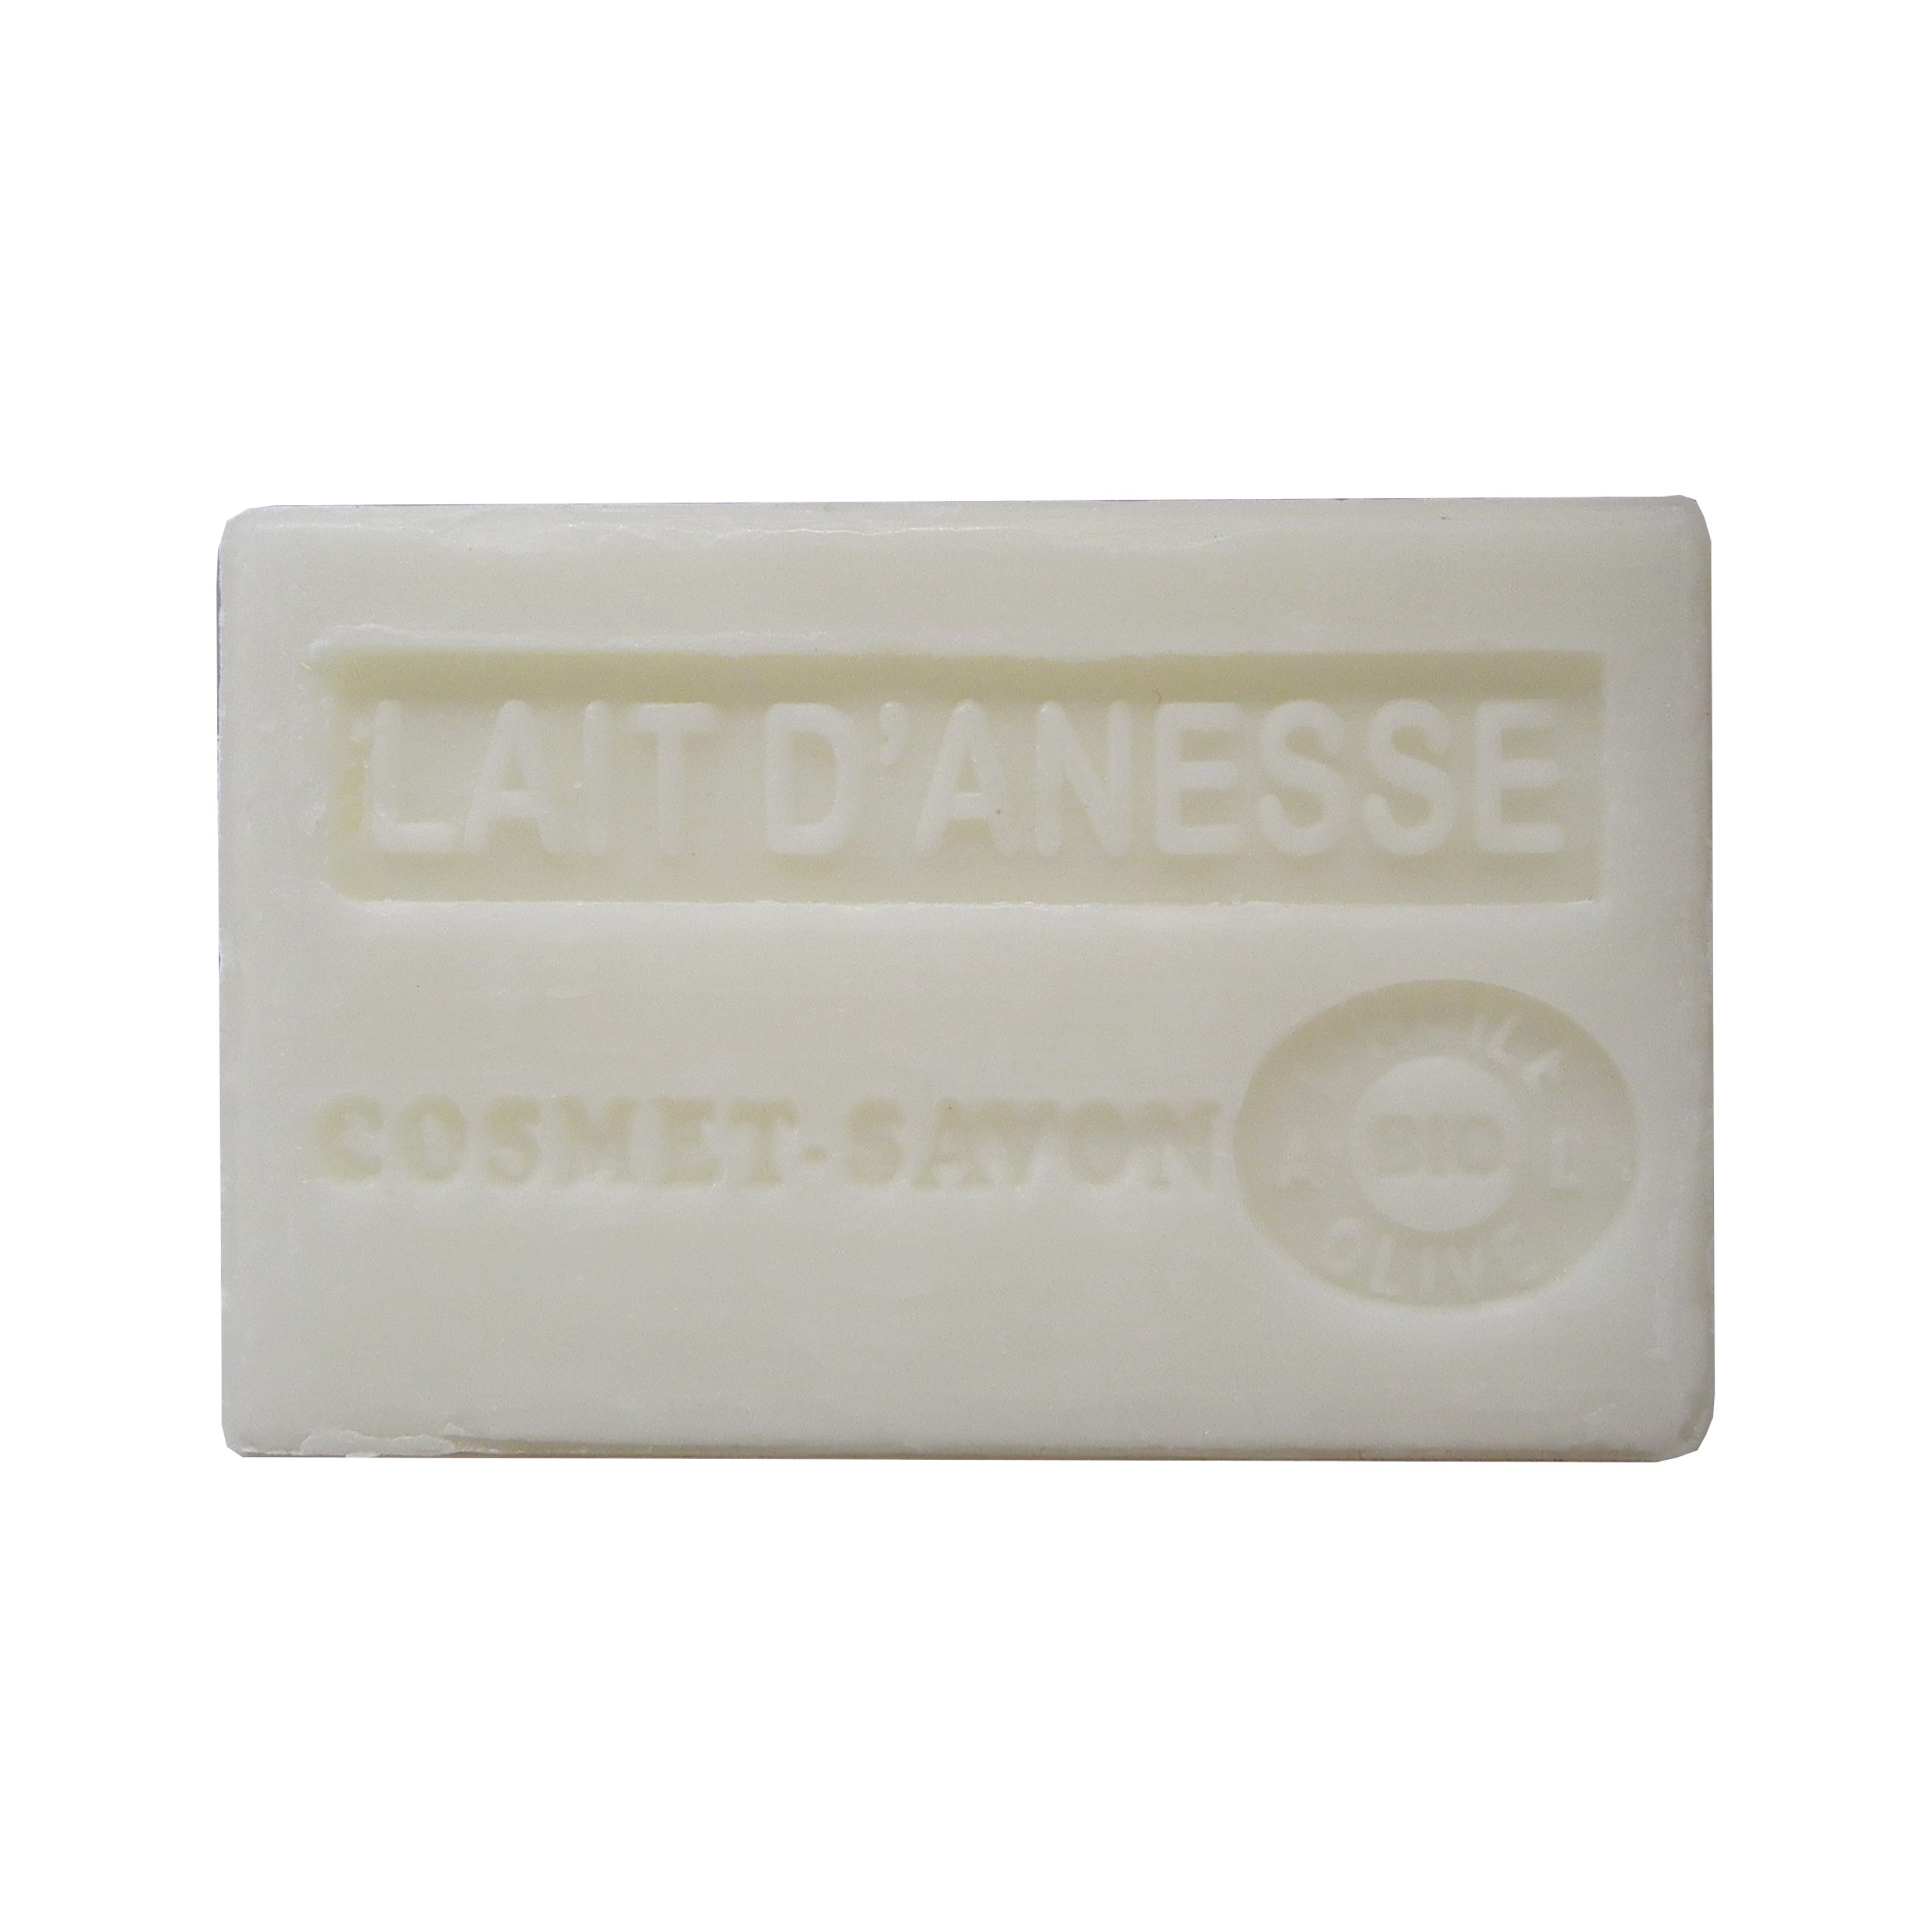 lait-anesse-savon-125gr-au-beurre-de-karite-bio-cosmet-savon-3665205006447-face_-JPEG